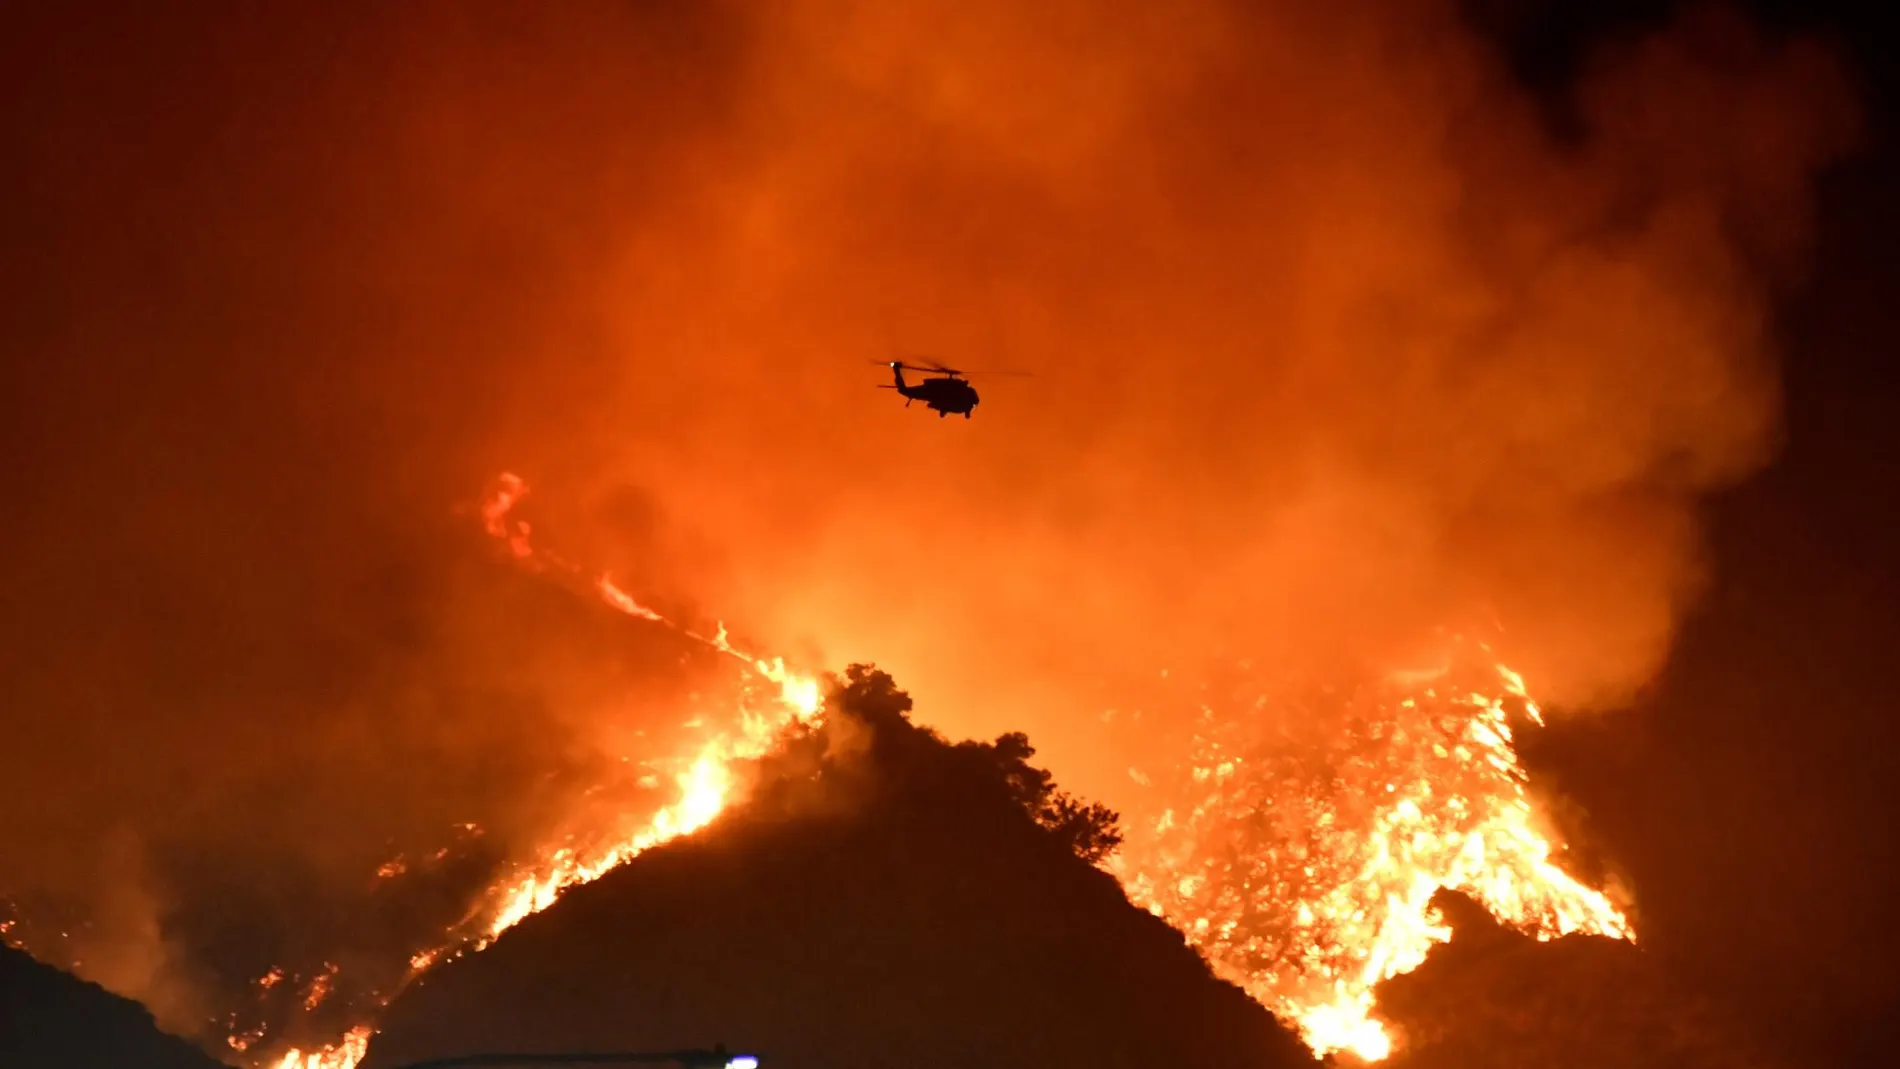 El emotivo tuit de Lebron James tras ser desalojado de su casa por los incendios que asolan California